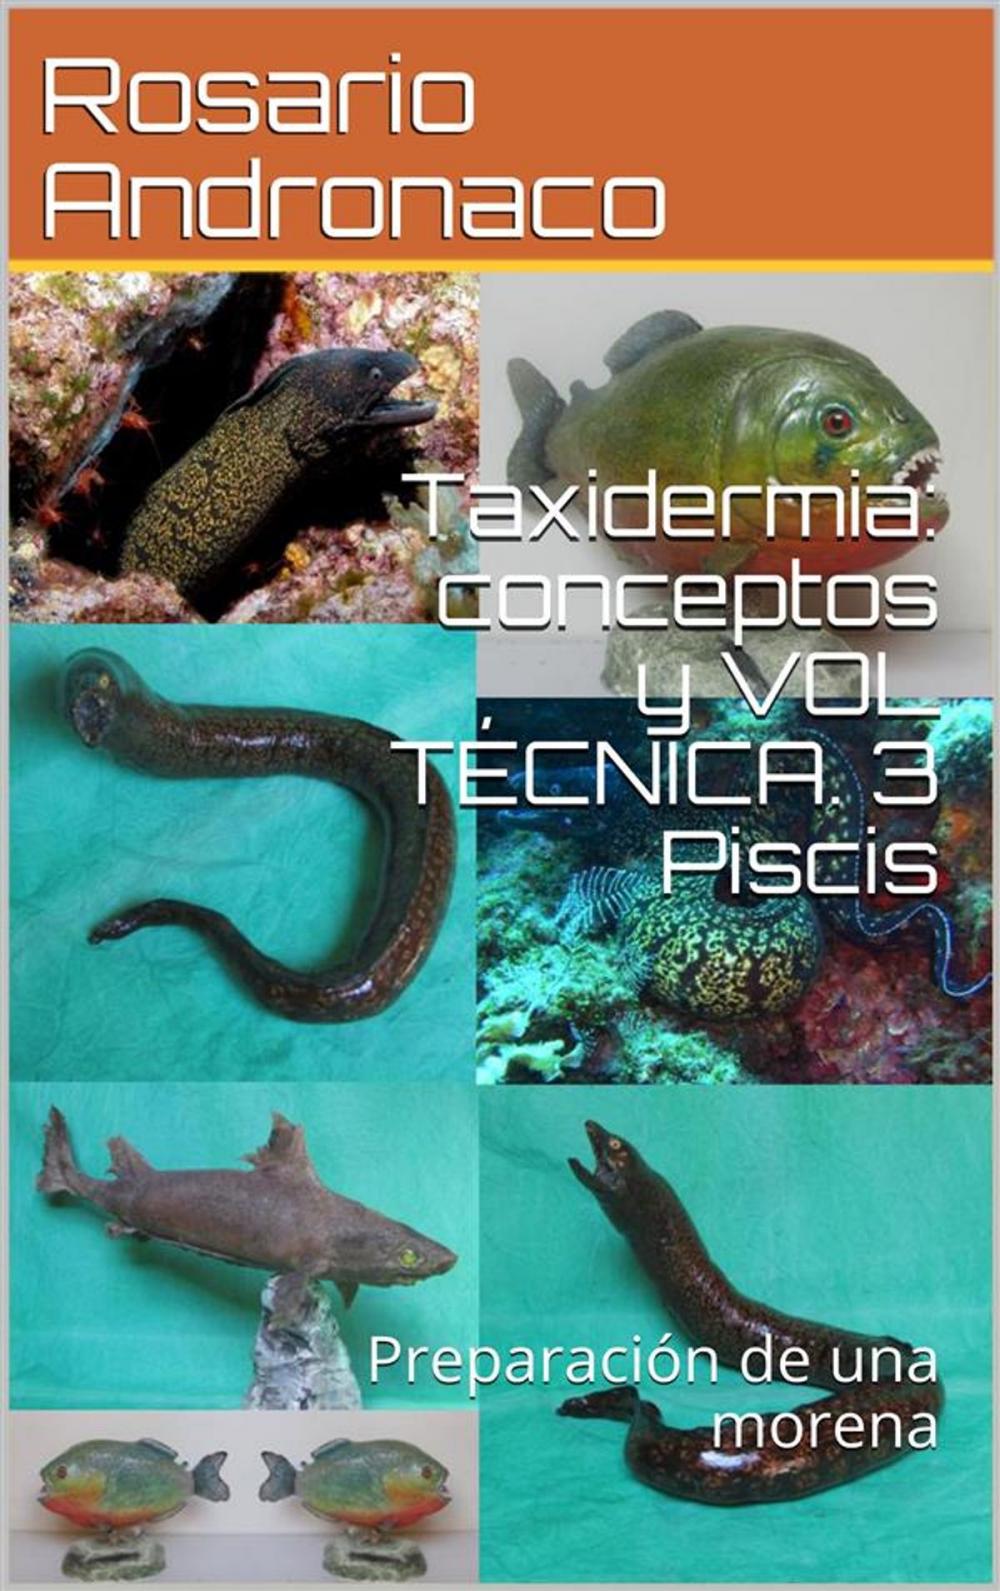 Big bigCover of Taxidermia: conceptos y VOL TÉCNICA. 3 Piscis - Preparación de una morena